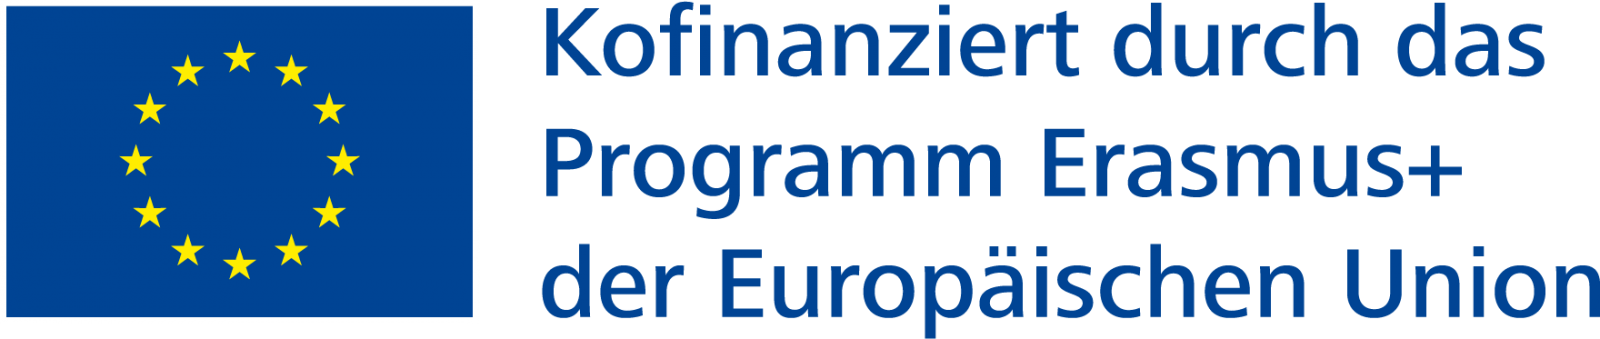 Logo: Europäische Fahne neben dem Schriftzug "Kofinanziert durch das Programm Erasmus+ der Europäischen Union"